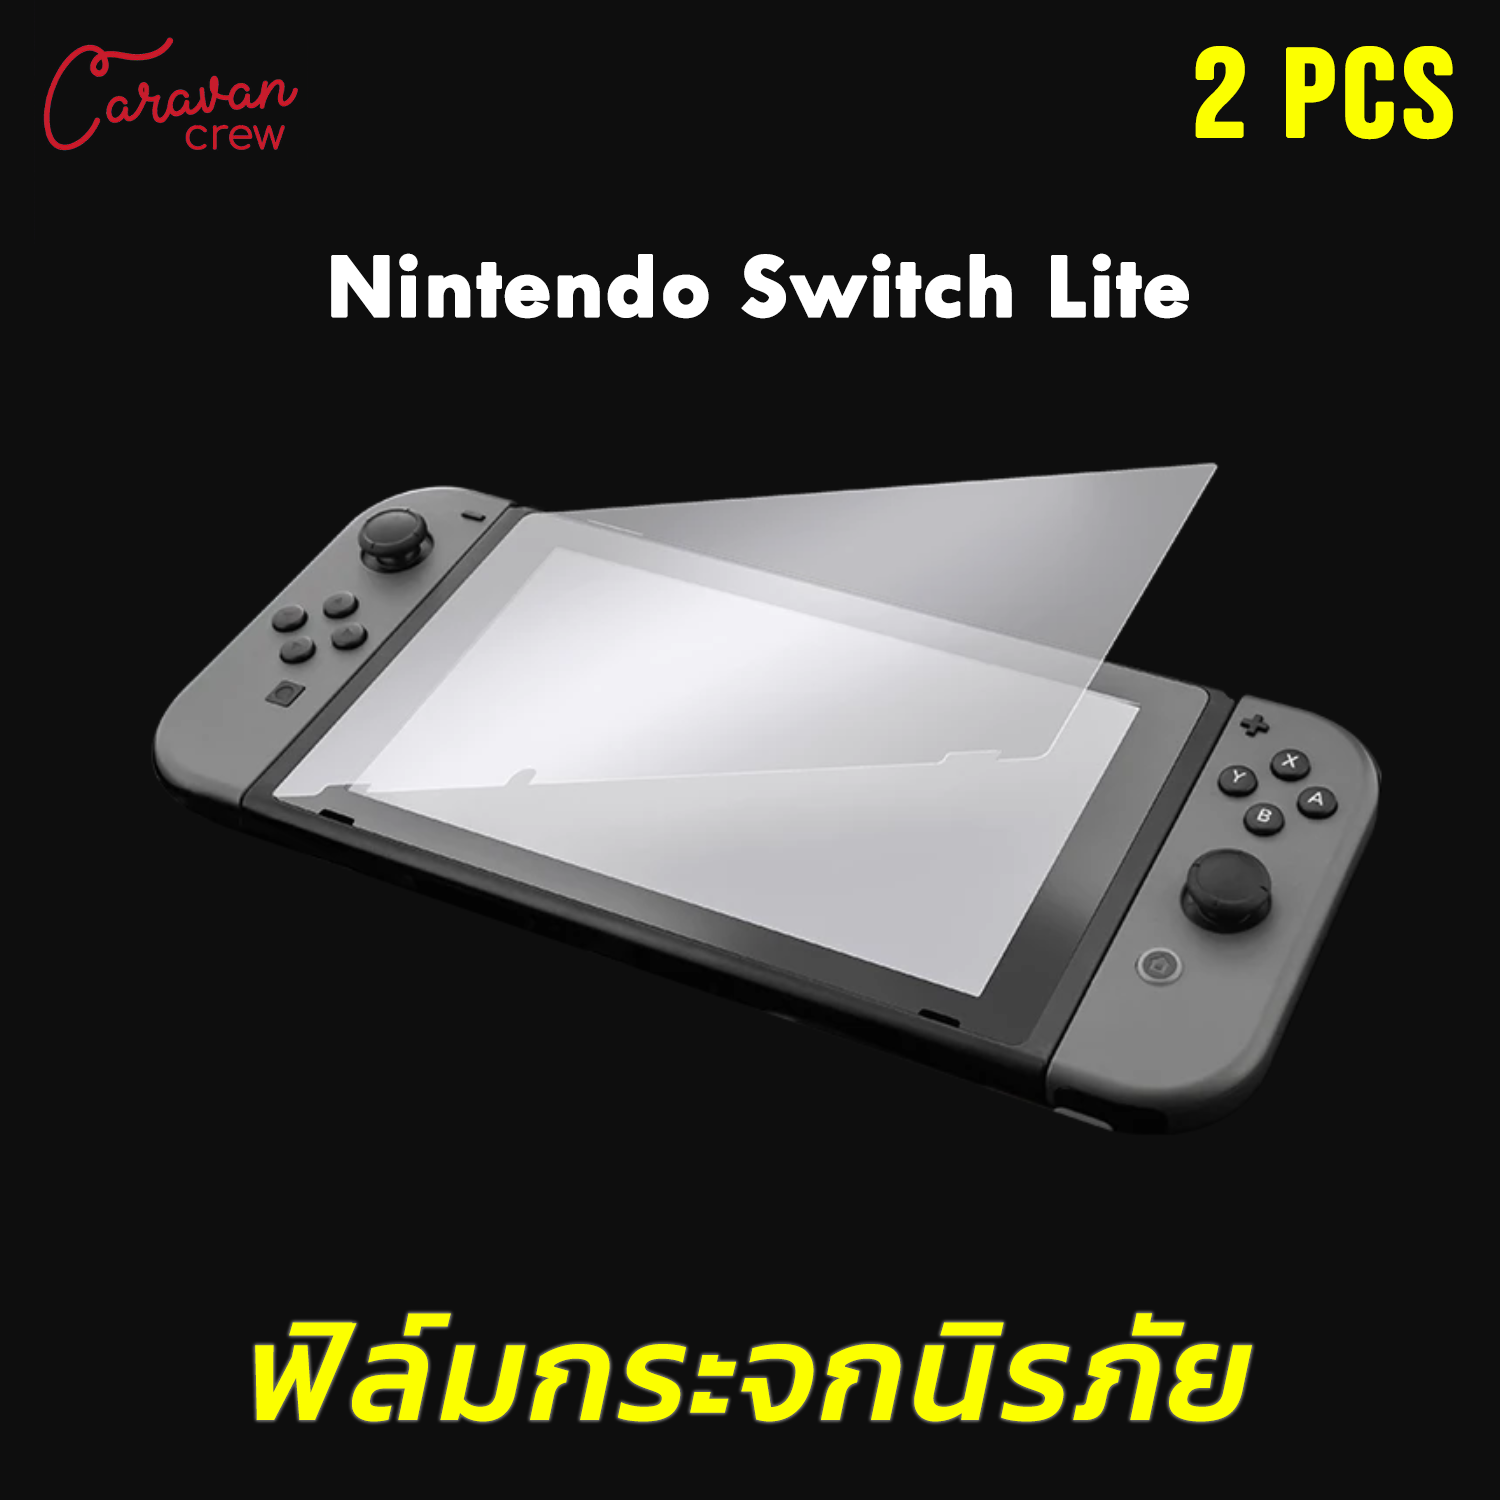 กระจกนิรภัย Nintendo Switch / Nintendo Switch Lite สำหรับเครื่องเล่นเกมส์ ฟิล์มกระจกนิรภัยเกรดพรีเมี่ยม ความแข็งระดับ 9H สัมผัสลื่นตอบสนองไว กันน้ำ จำนวน 2 ชิ้น Screen Protector 2Pcs Caravan Crew Film Tempered Glass